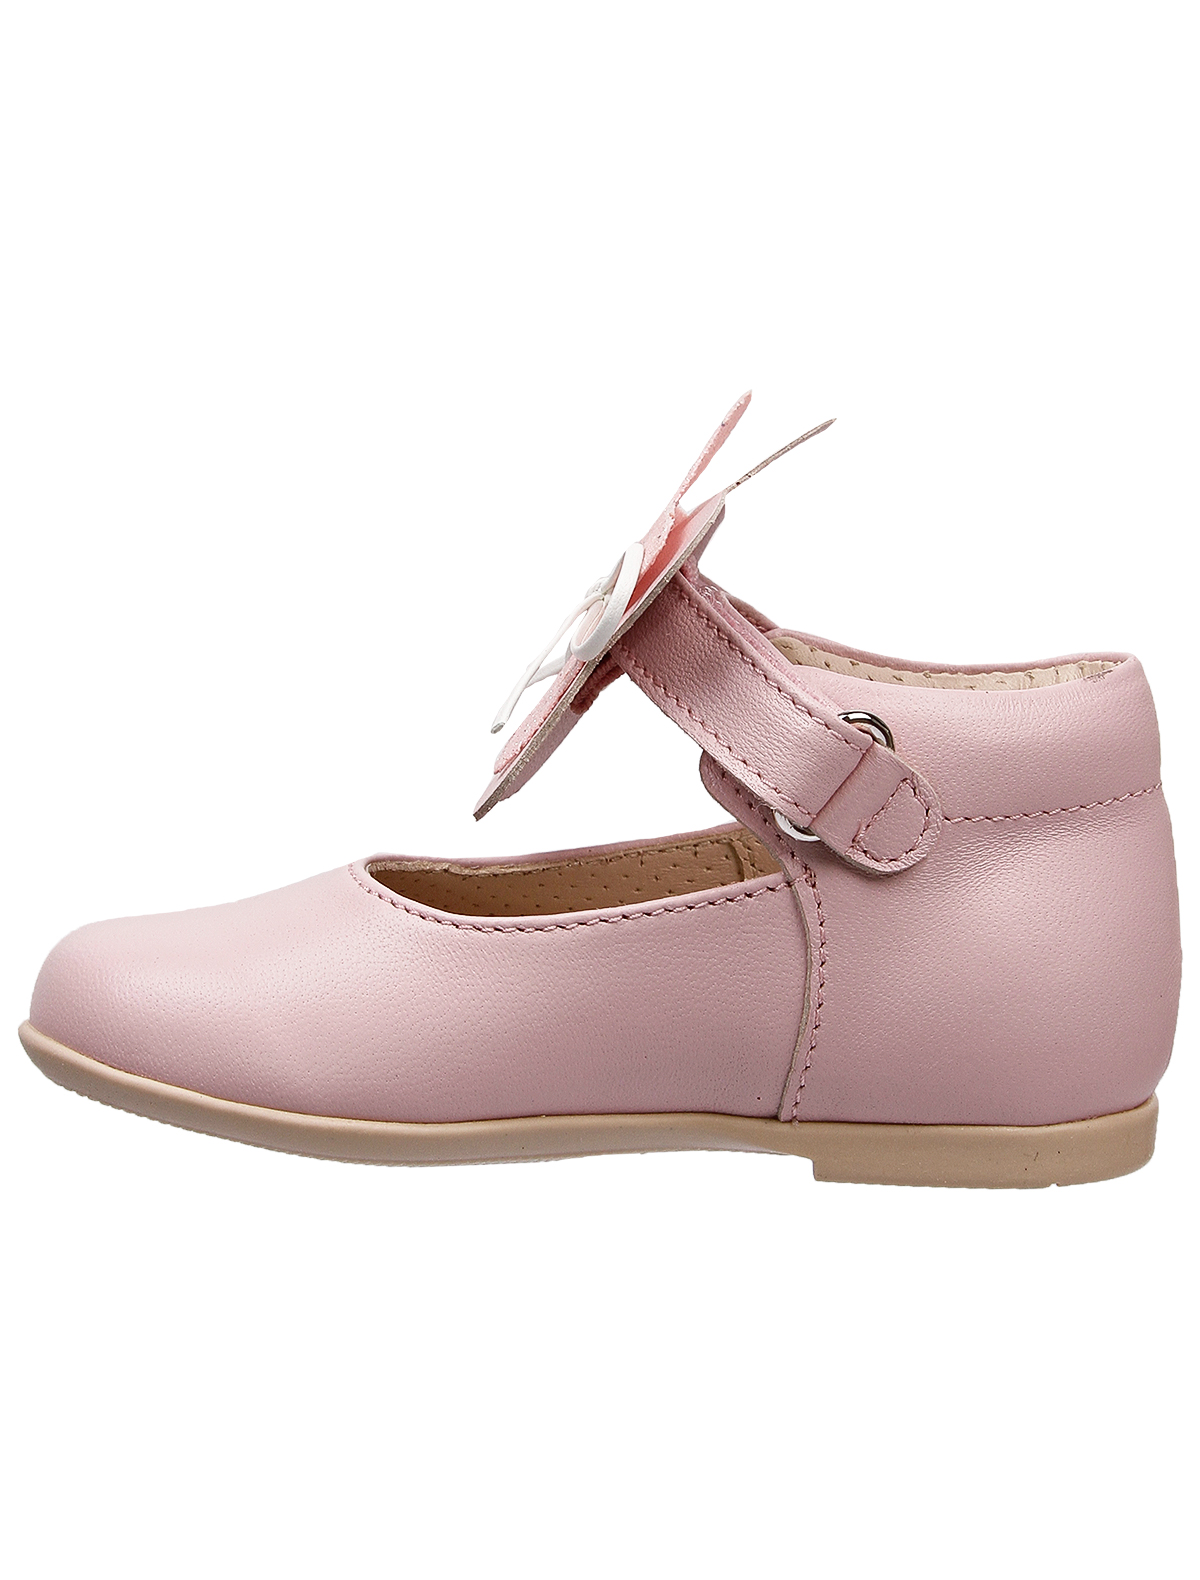 Туфли Florens 2442841, цвет розовый, размер 26 2014509271883 - фото 3